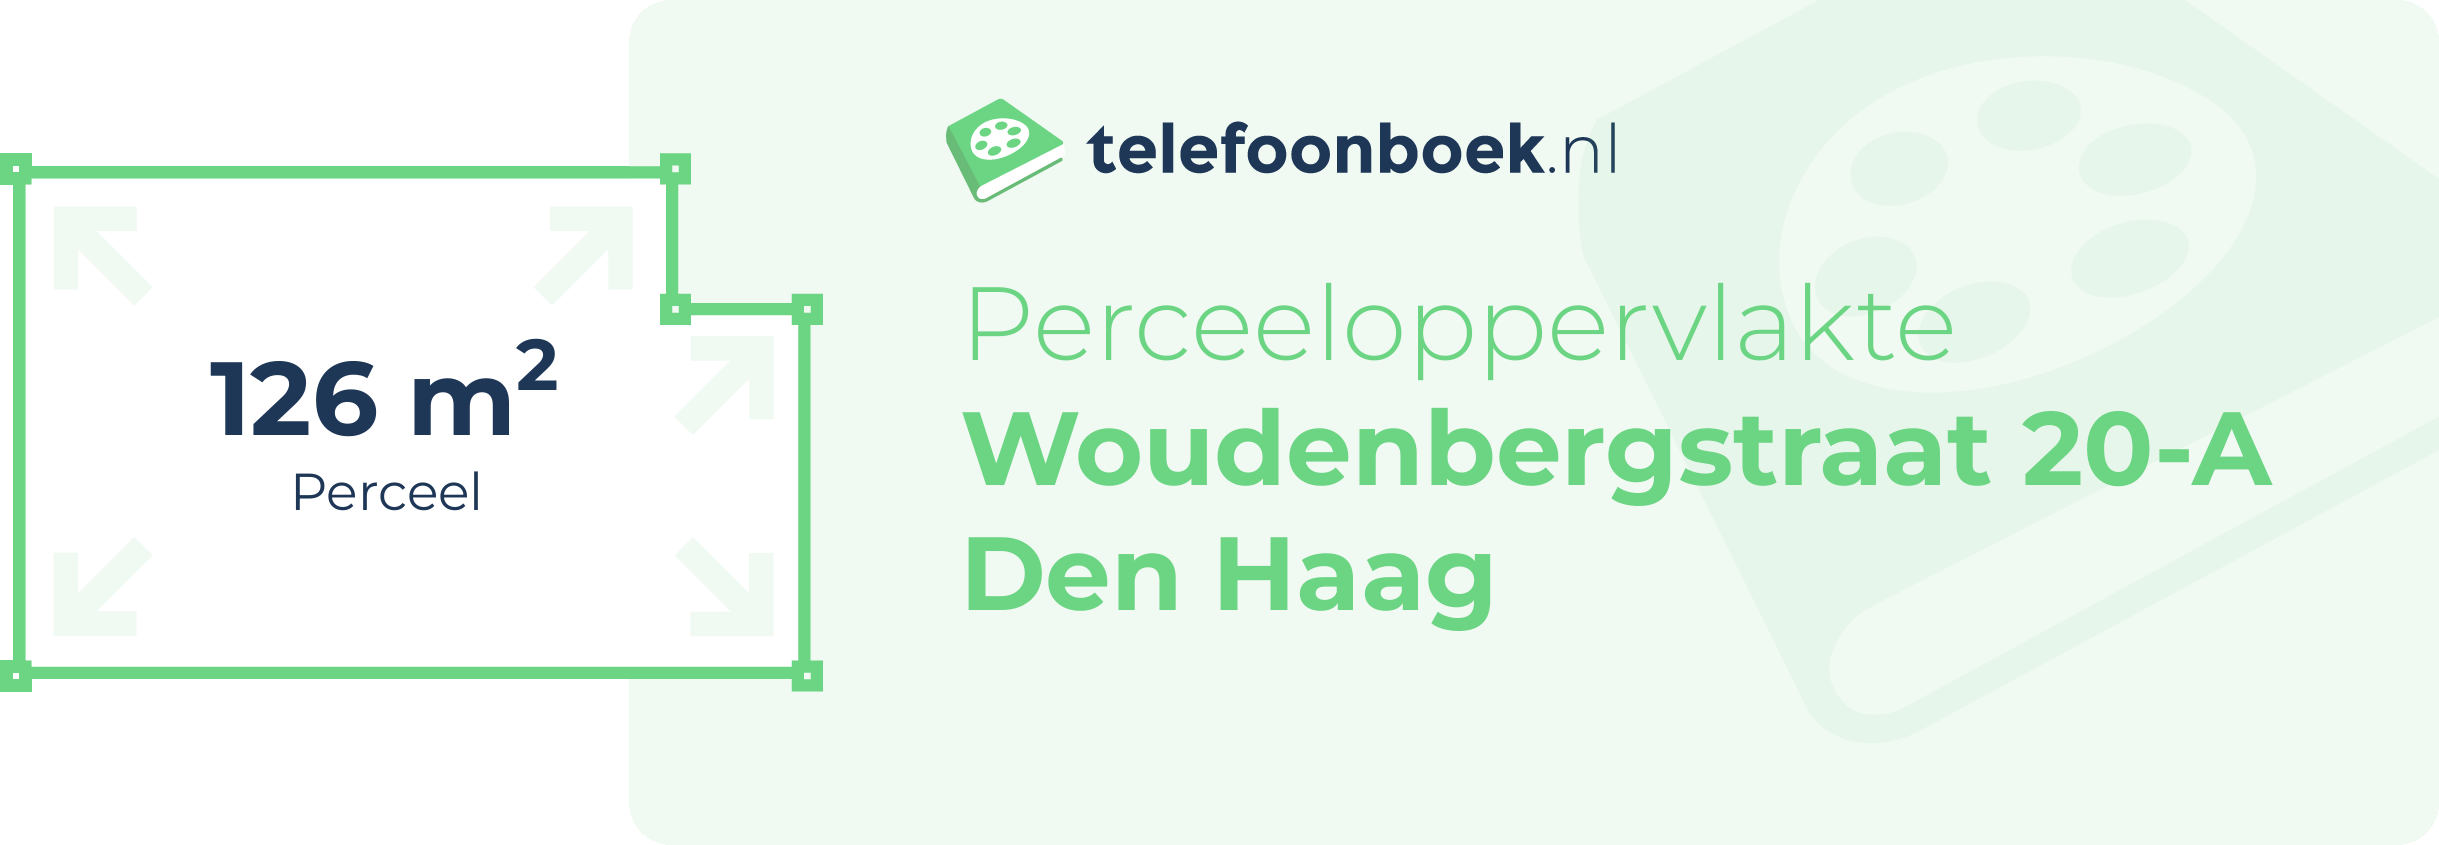 Perceeloppervlakte Woudenbergstraat 20-A Den Haag